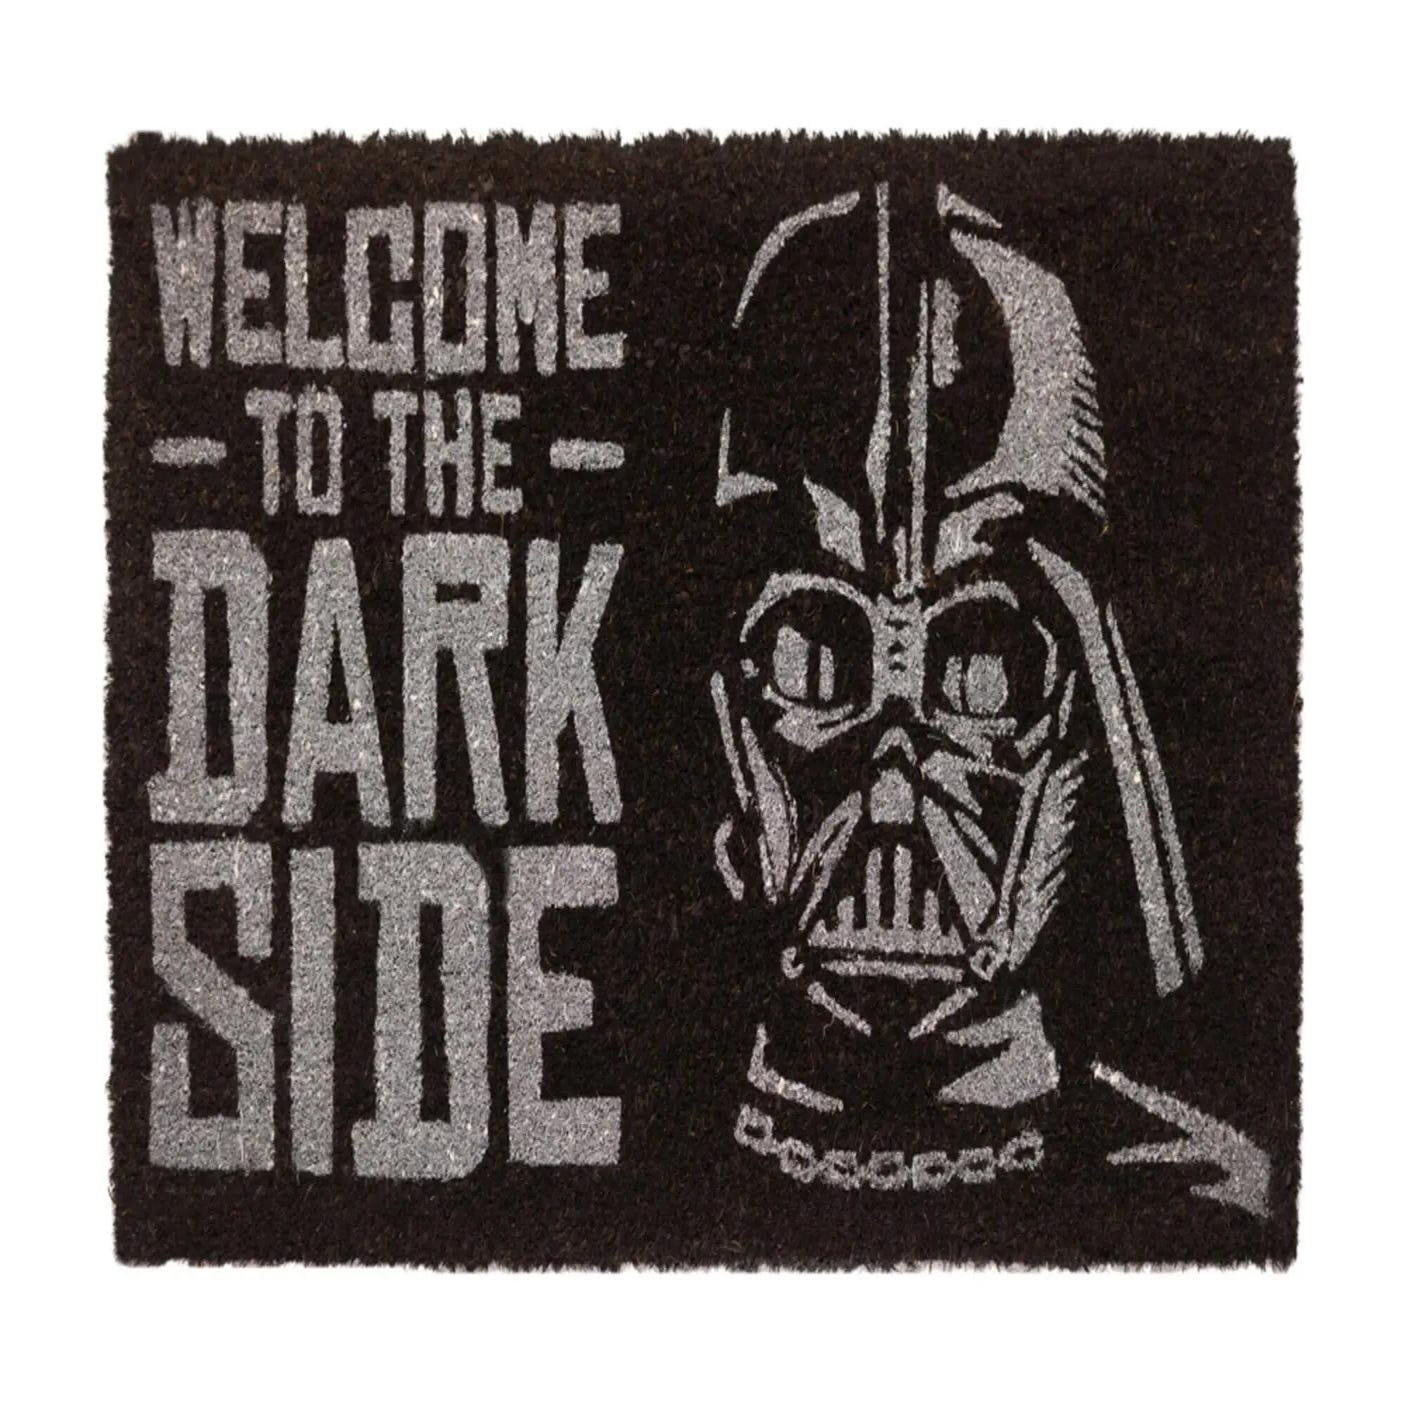 Felpudo Star Wars Welcome Dark Side de fibra de coco y pvc 40x60cm